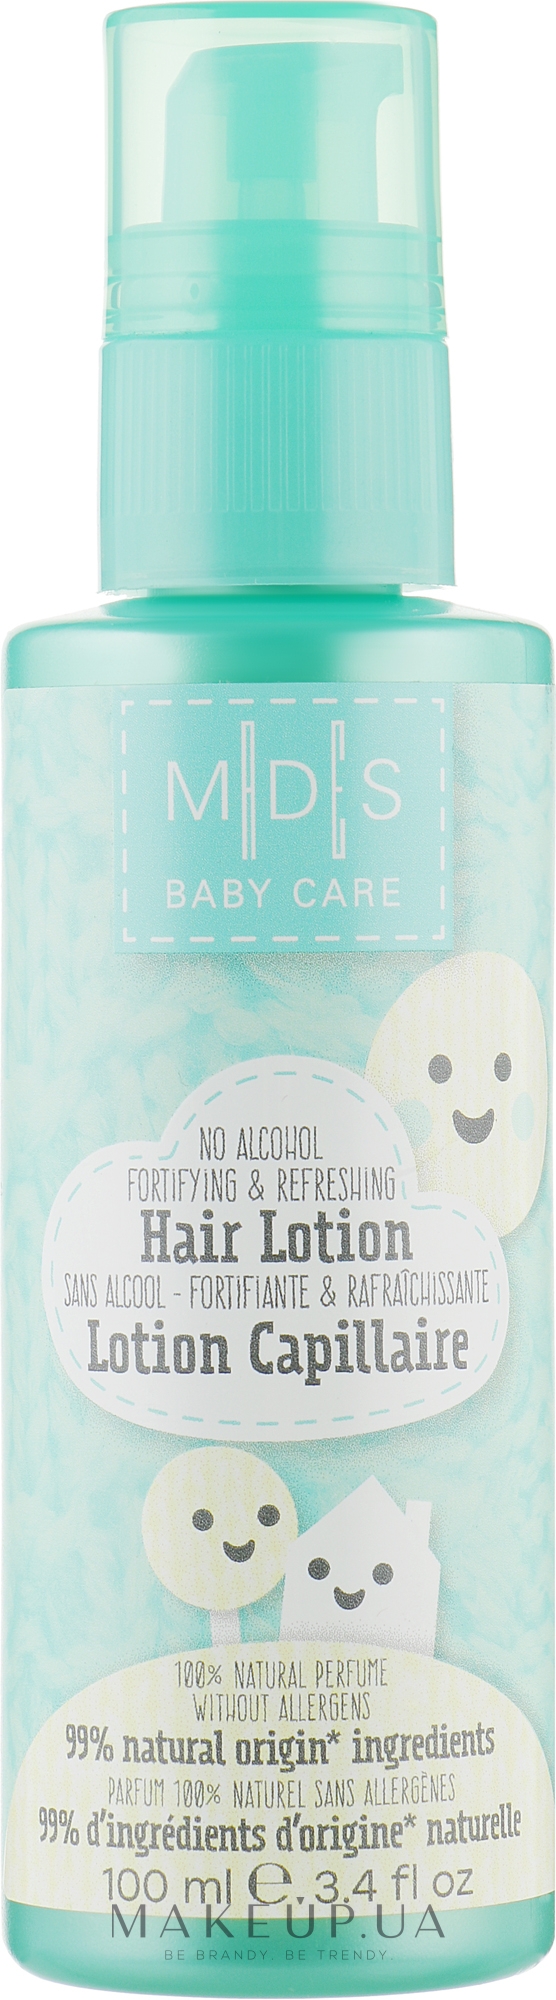 Органічний лосьйон для волосся і шкіри голови дитини - Mades Cosmetics M|D|S Baby Care Hair Lotion — фото 100ml